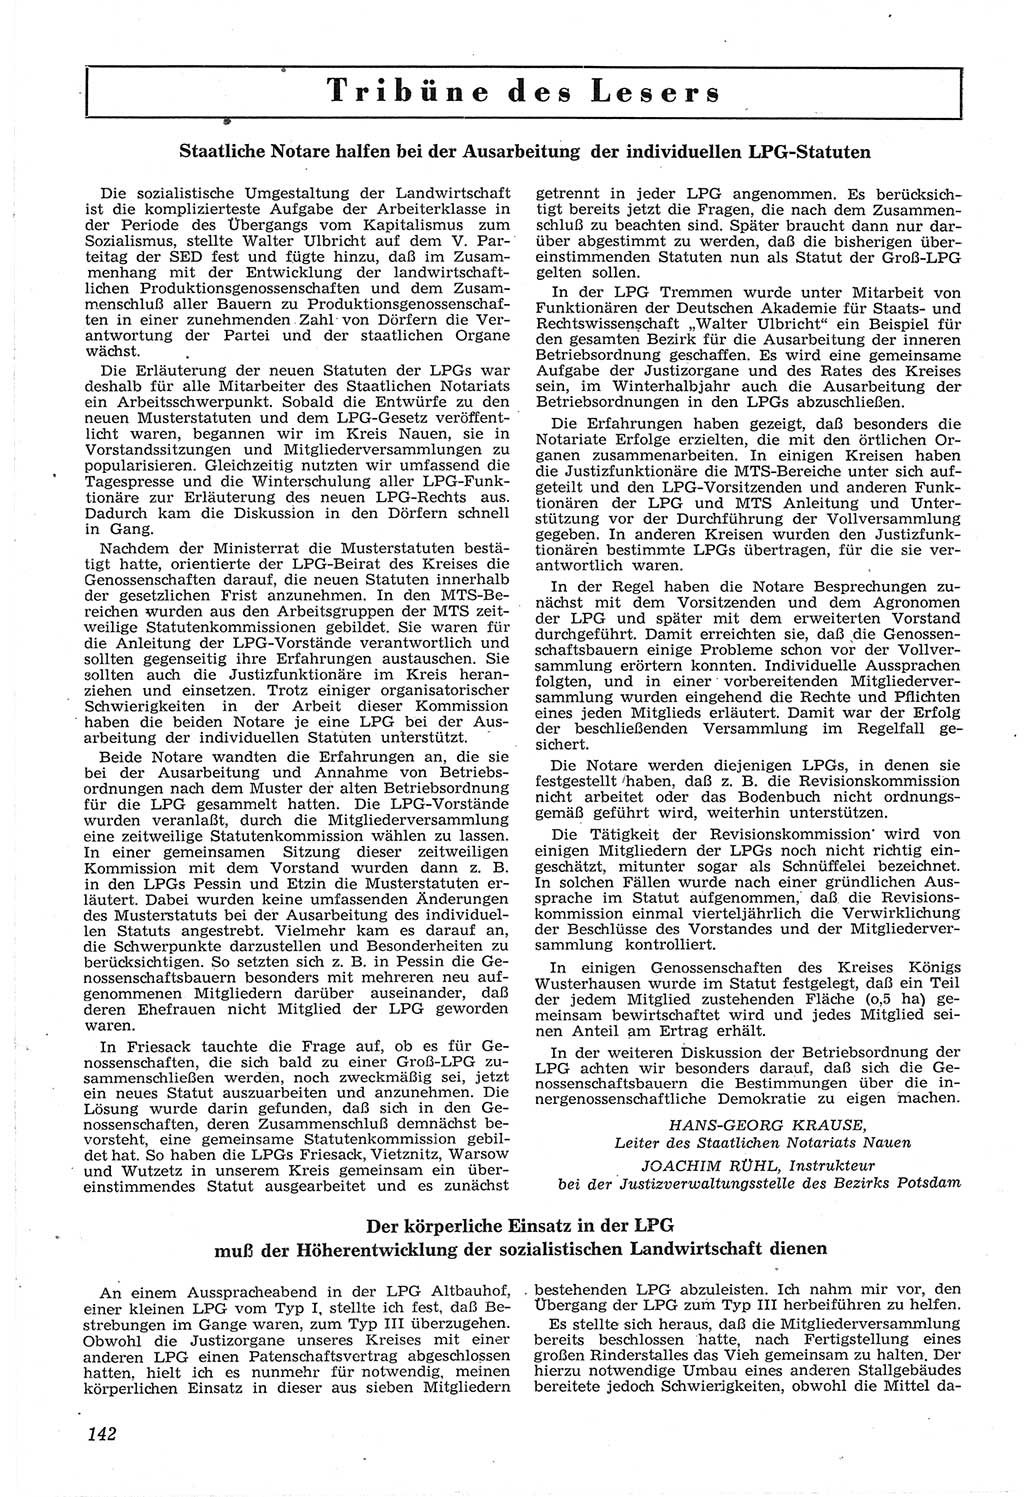 Neue Justiz (NJ), Zeitschrift für Recht und Rechtswissenschaft [Deutsche Demokratische Republik (DDR)], 14. Jahrgang 1960, Seite 142 (NJ DDR 1960, S. 142)